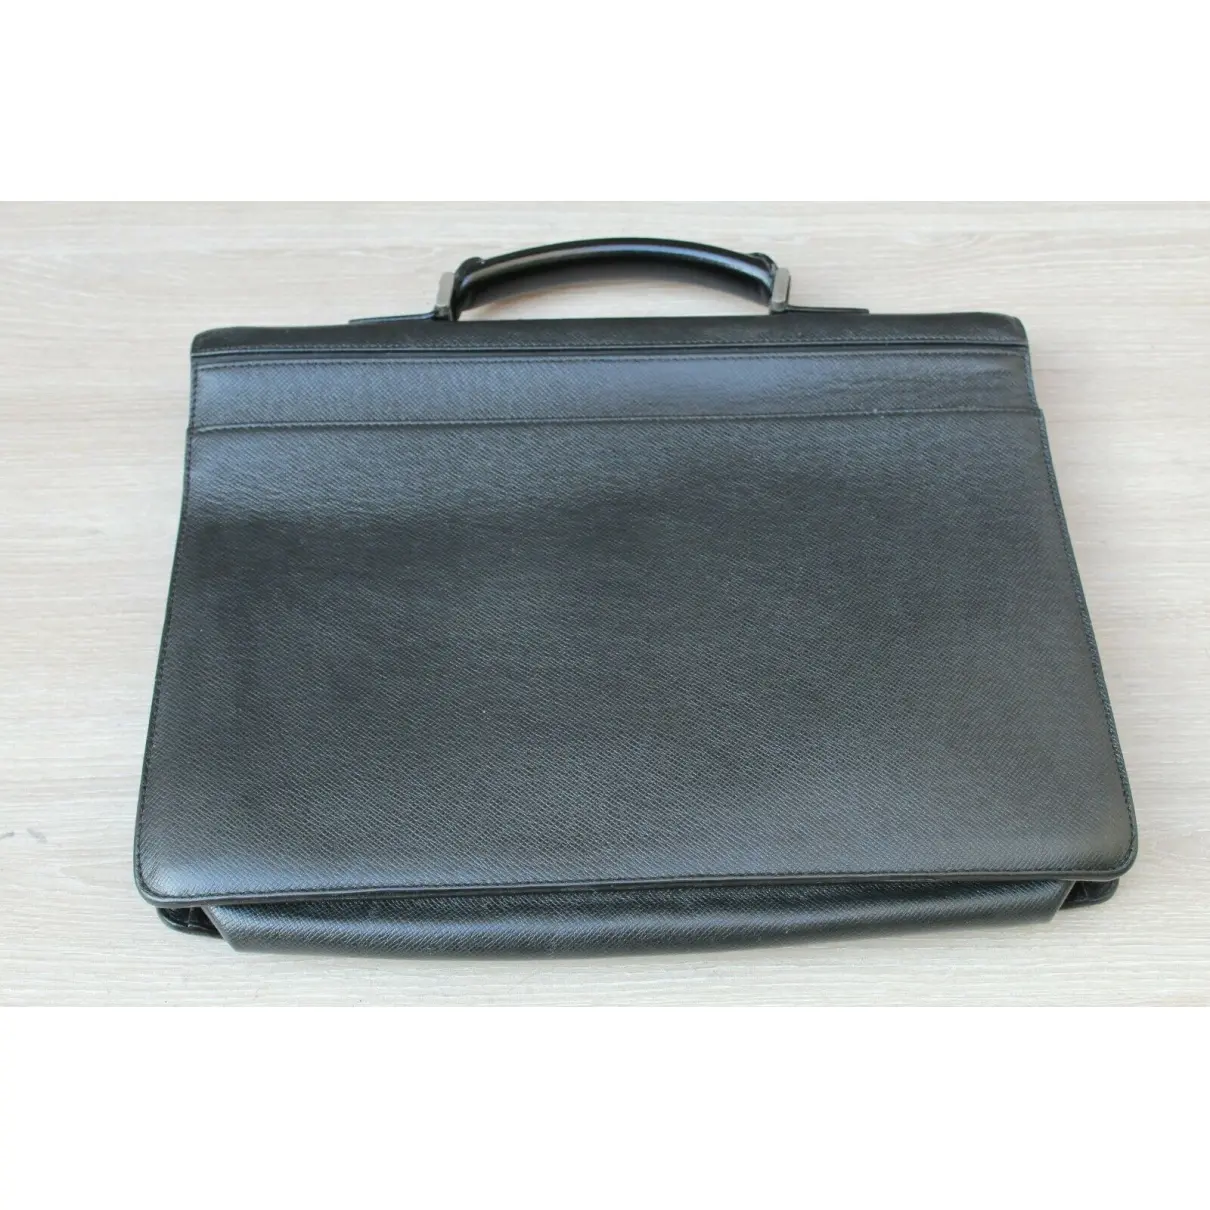 Buy Louis Vuitton Porte Documents Jour leather satchel online